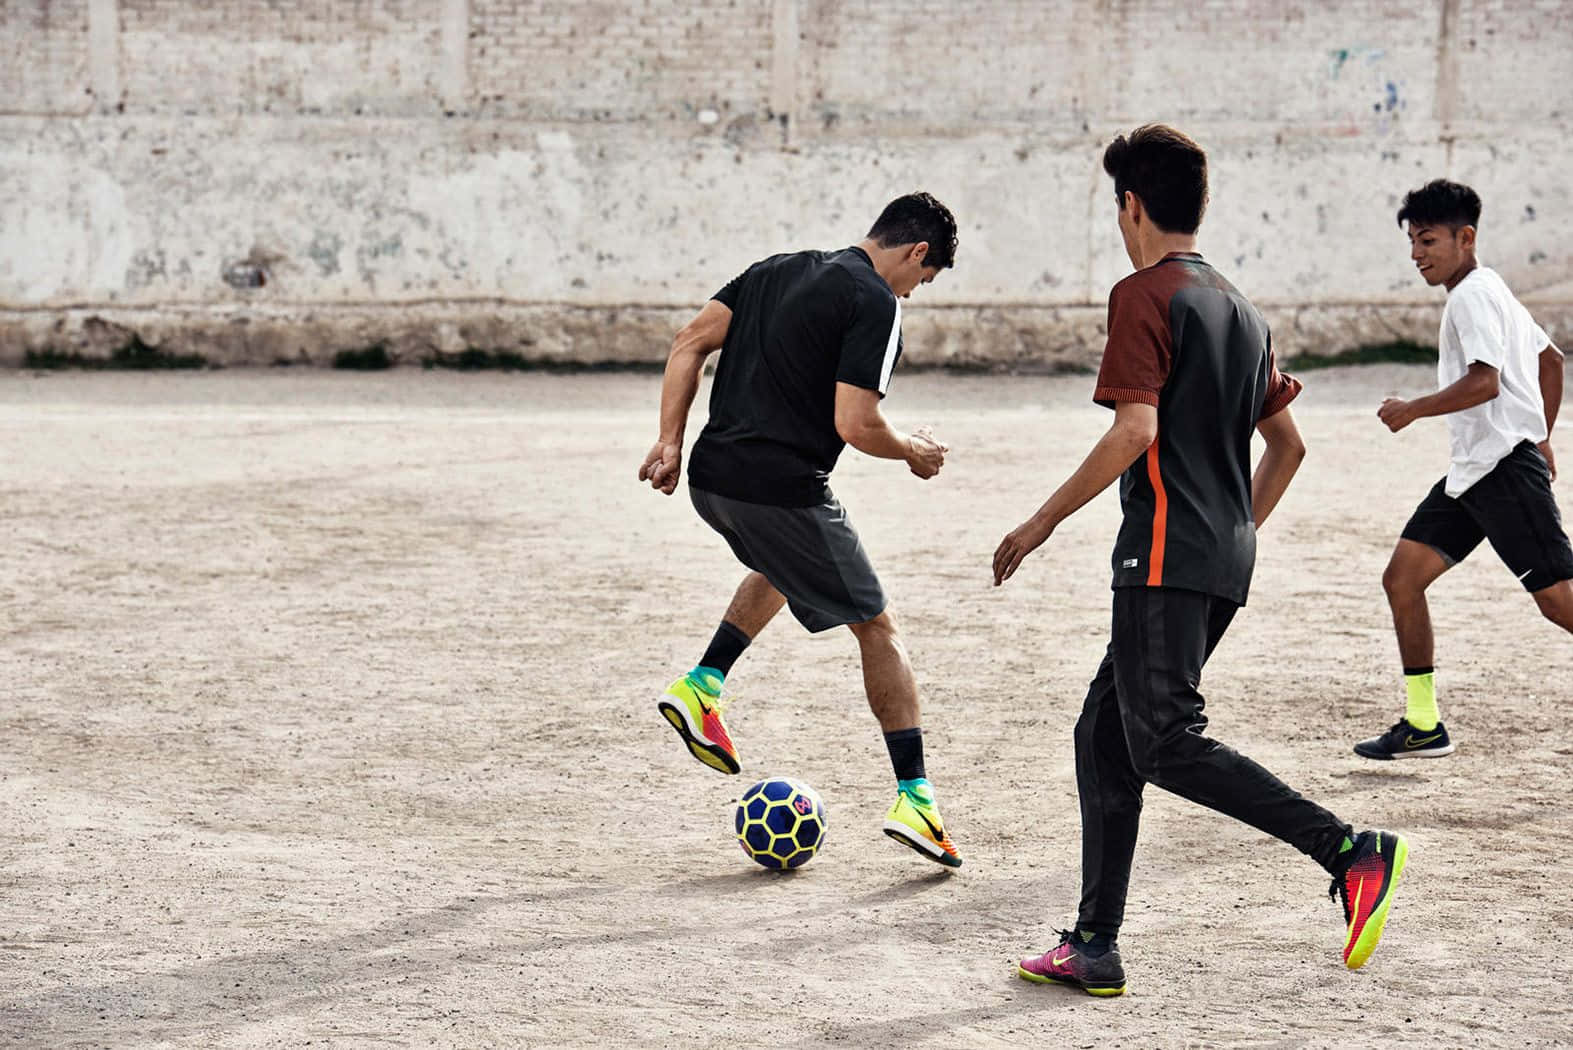 Street Soccer Action Shot.jpg Wallpaper